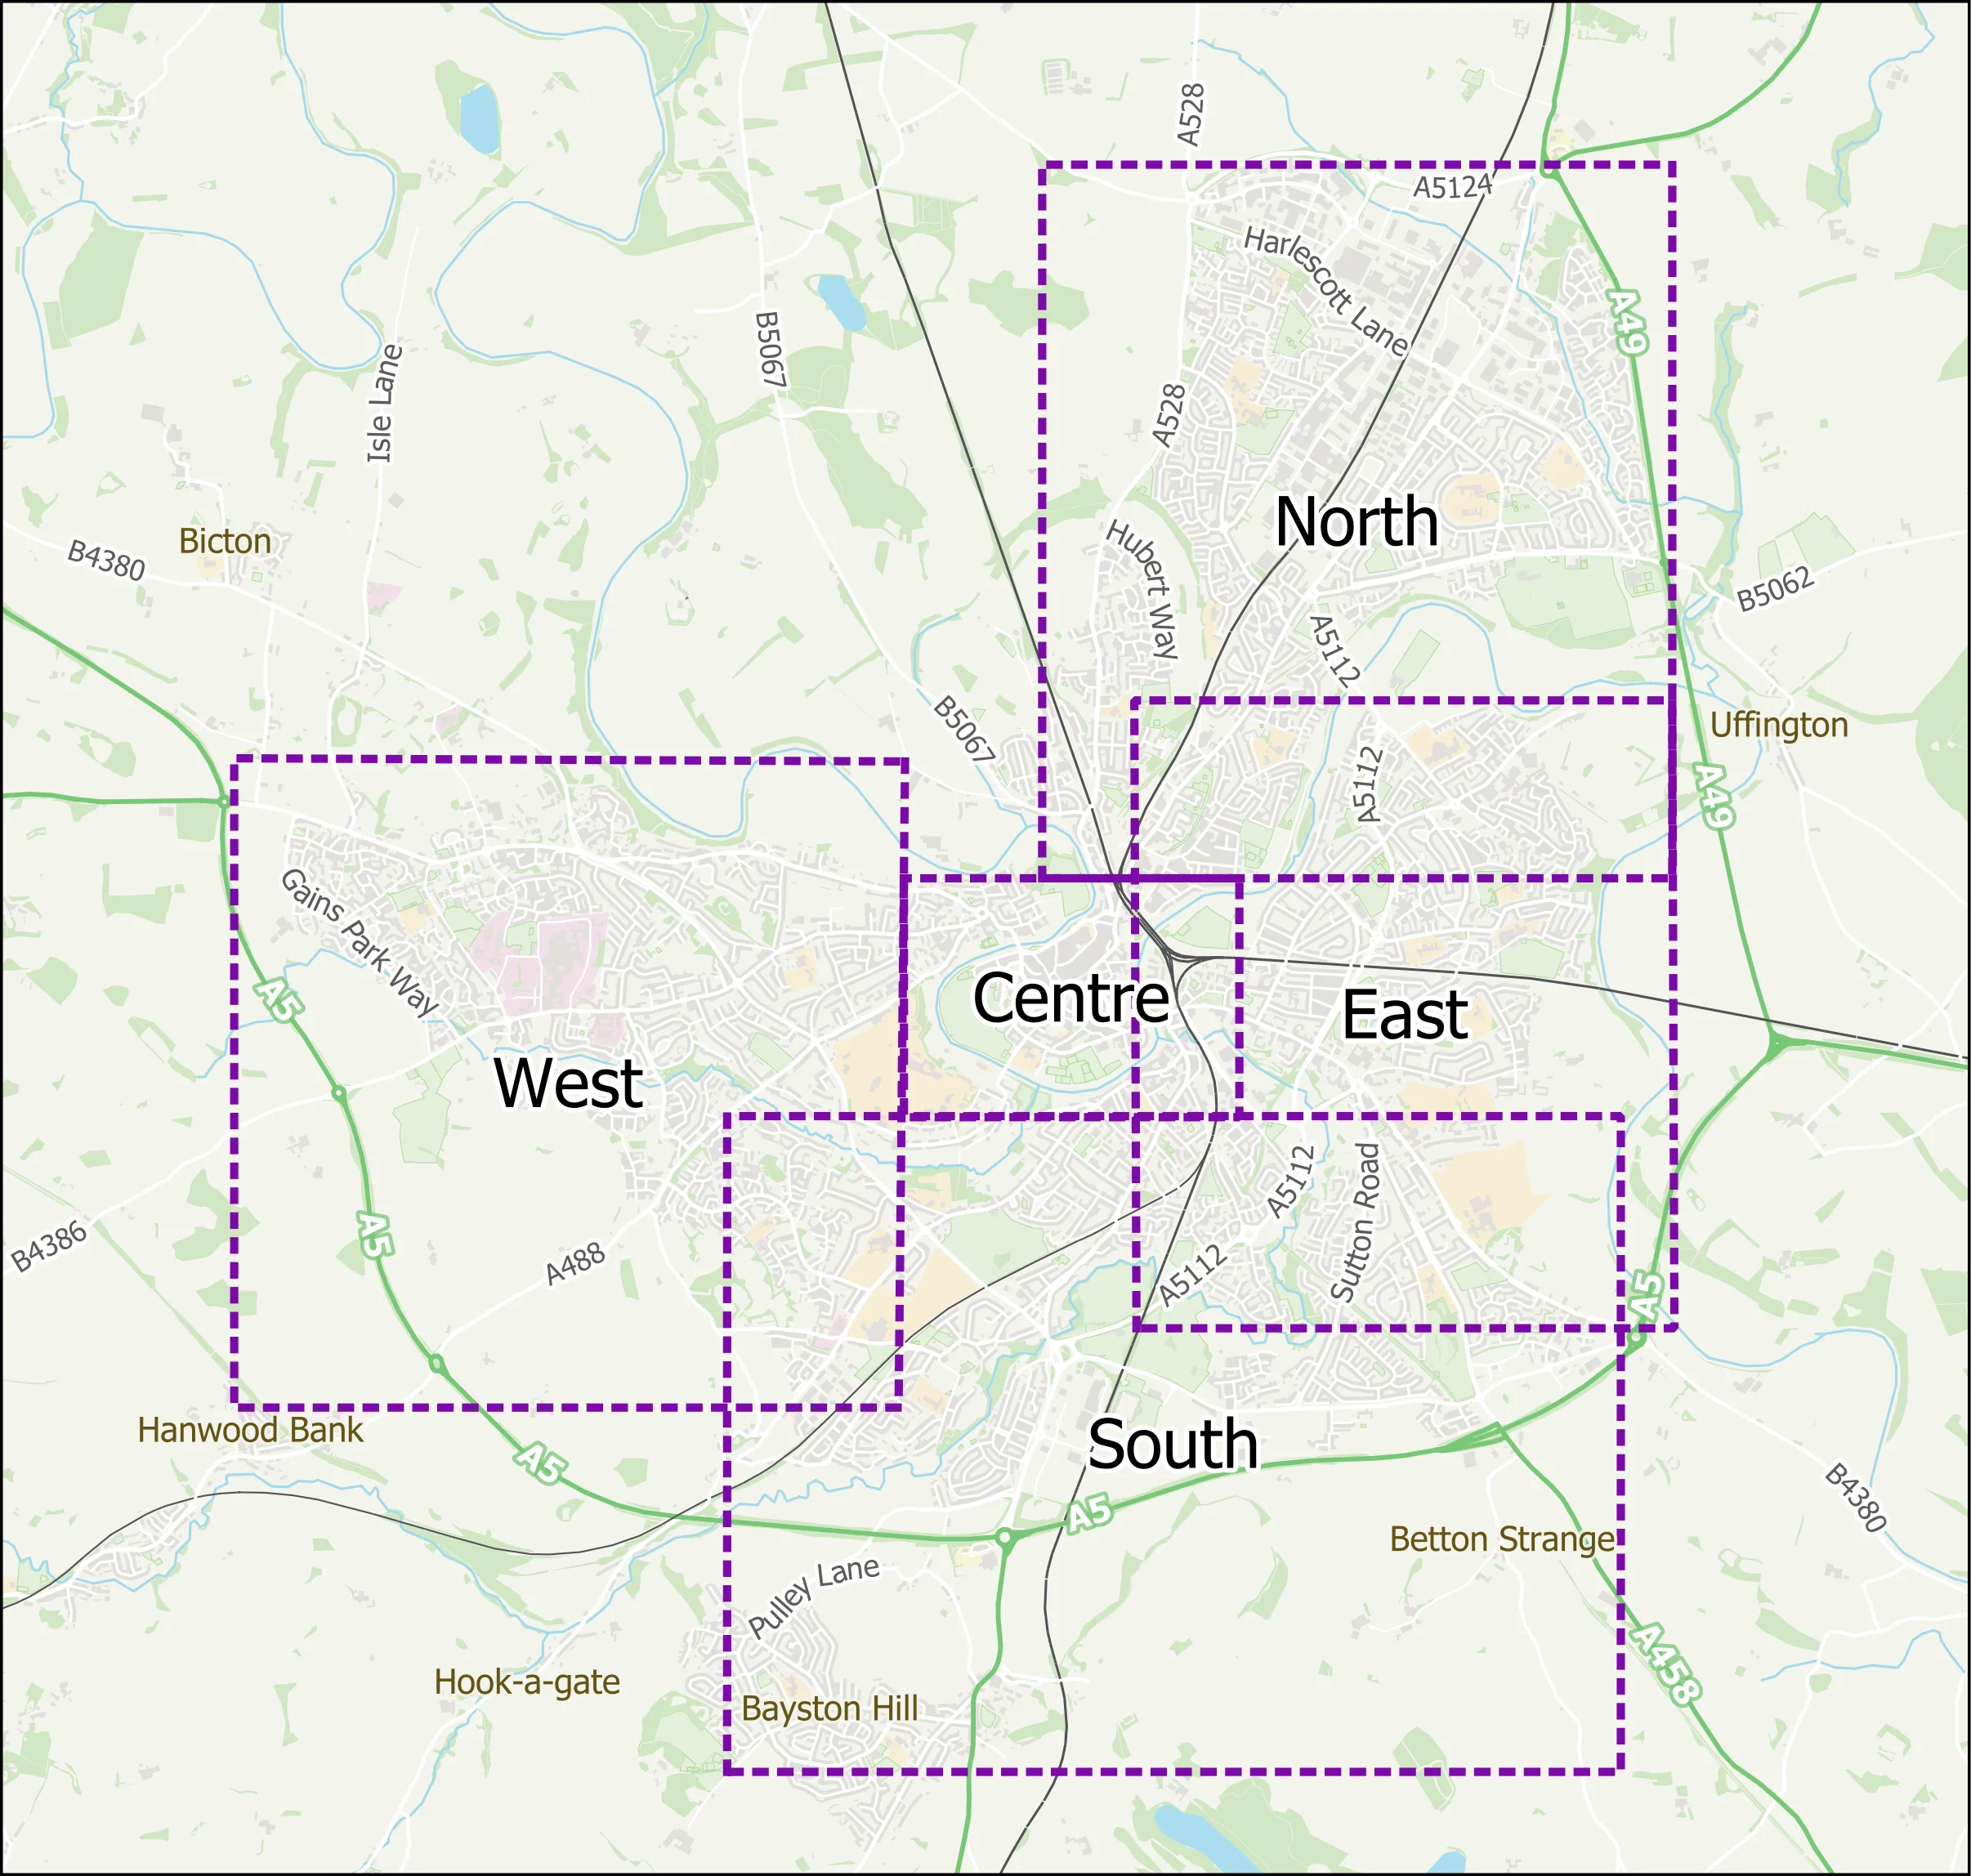 Map Of Shrewsbury Areas 5 May 23